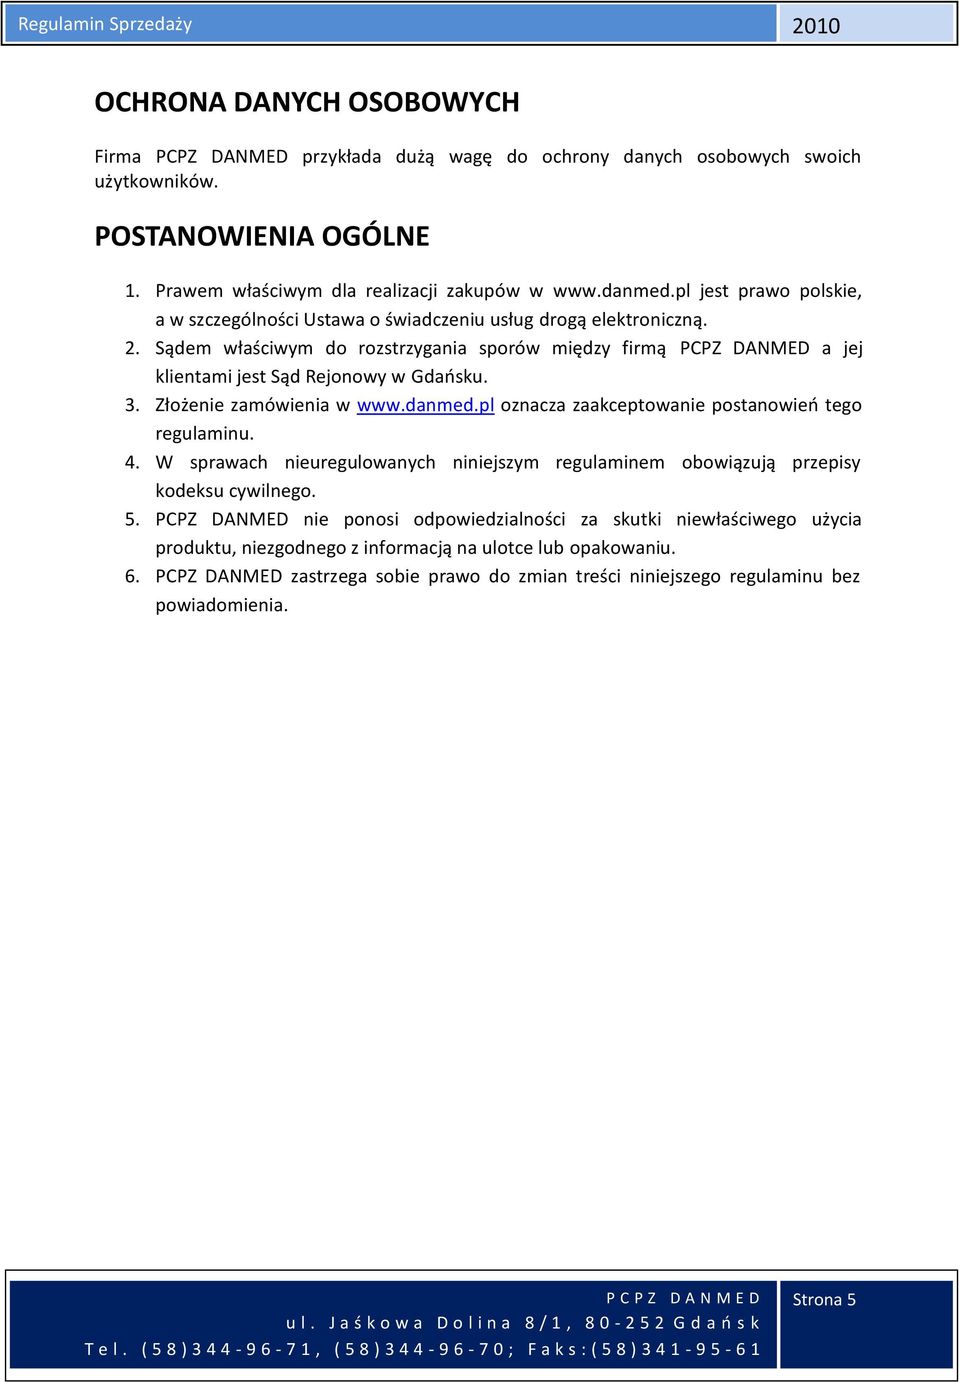 Sądem właściwym do rozstrzygania sporów między firmą PCPZ DANMED a jej klientami jest Sąd Rejonowy w Gdańsku. 3. Złożenie zamówienia w www.danmed.pl oznacza zaakceptowanie postanowień tego regulaminu.